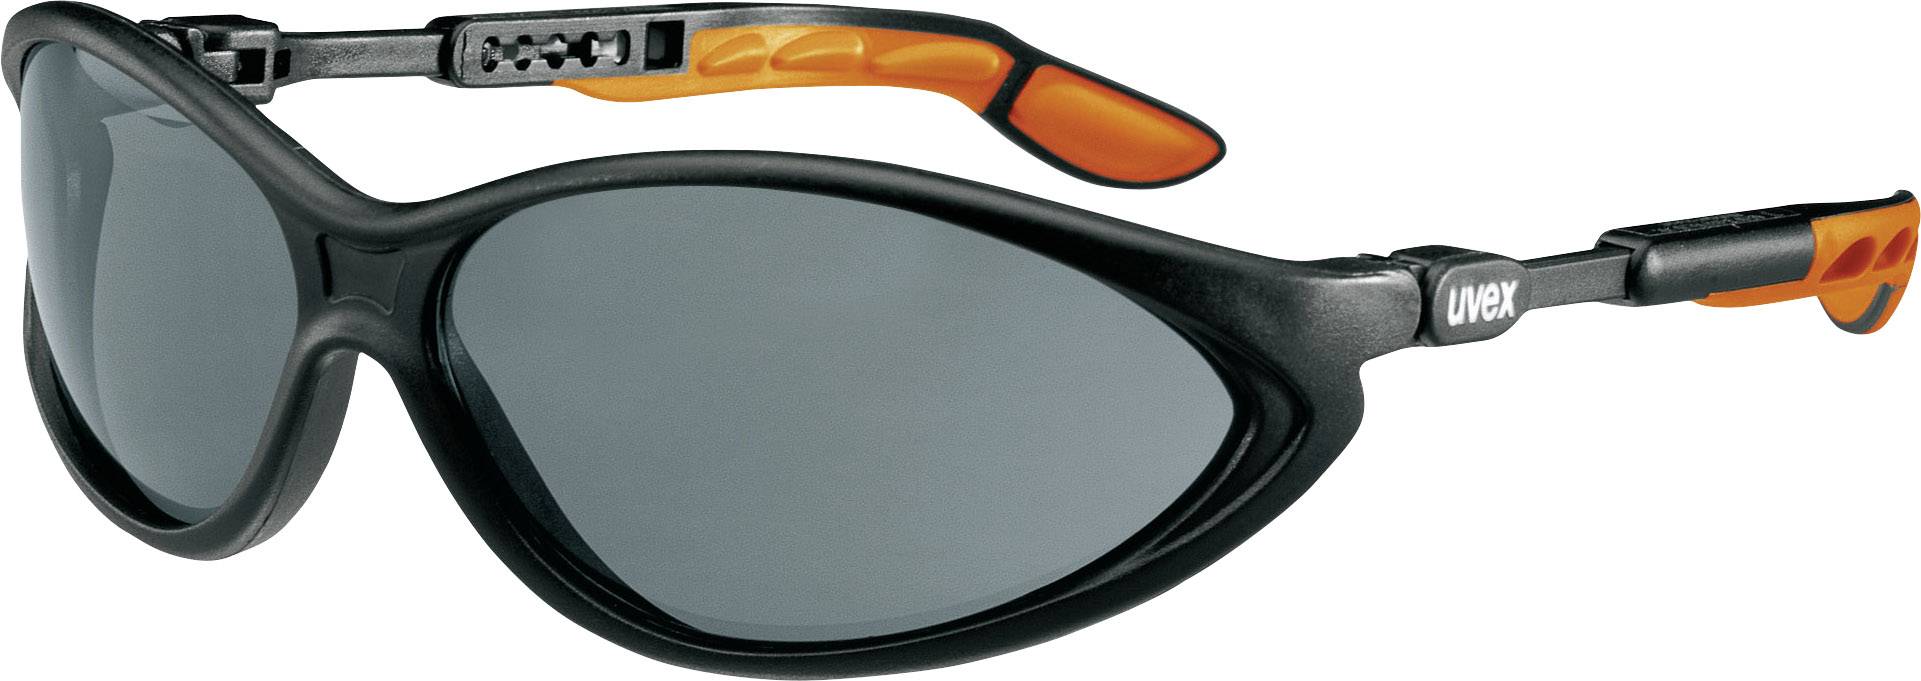 UVEX 9188076 Schutzbrille/Sicherheitsbrille Orange - Schwarz (9188076)